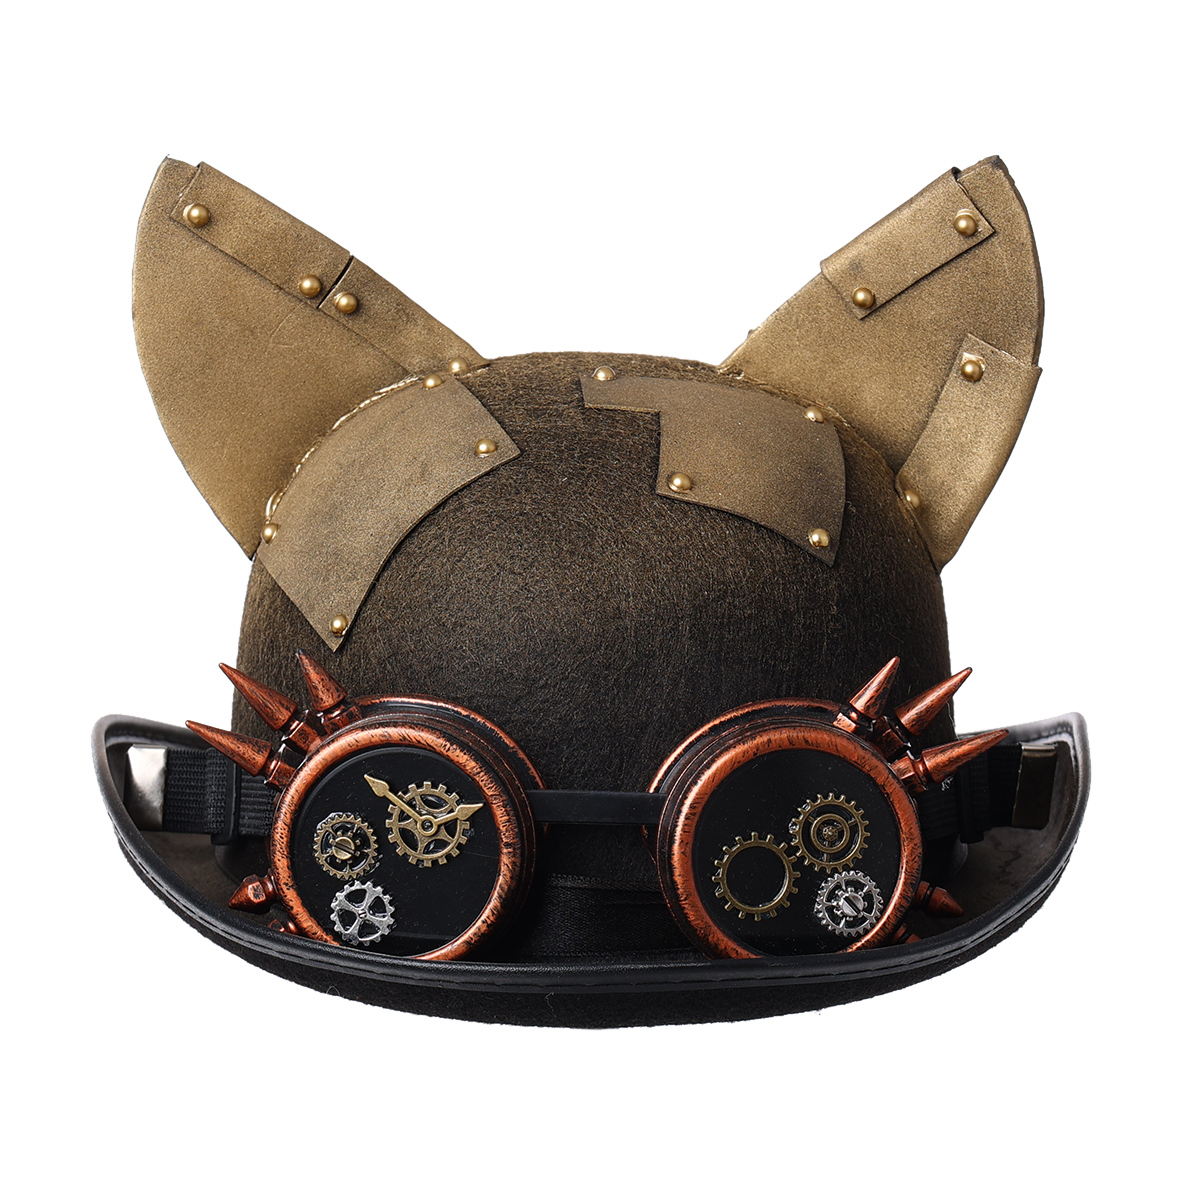 Chapeau melon avec des lunettes à piques et engrenages ainsi que des oreilles de chats pointues sur le dessus.